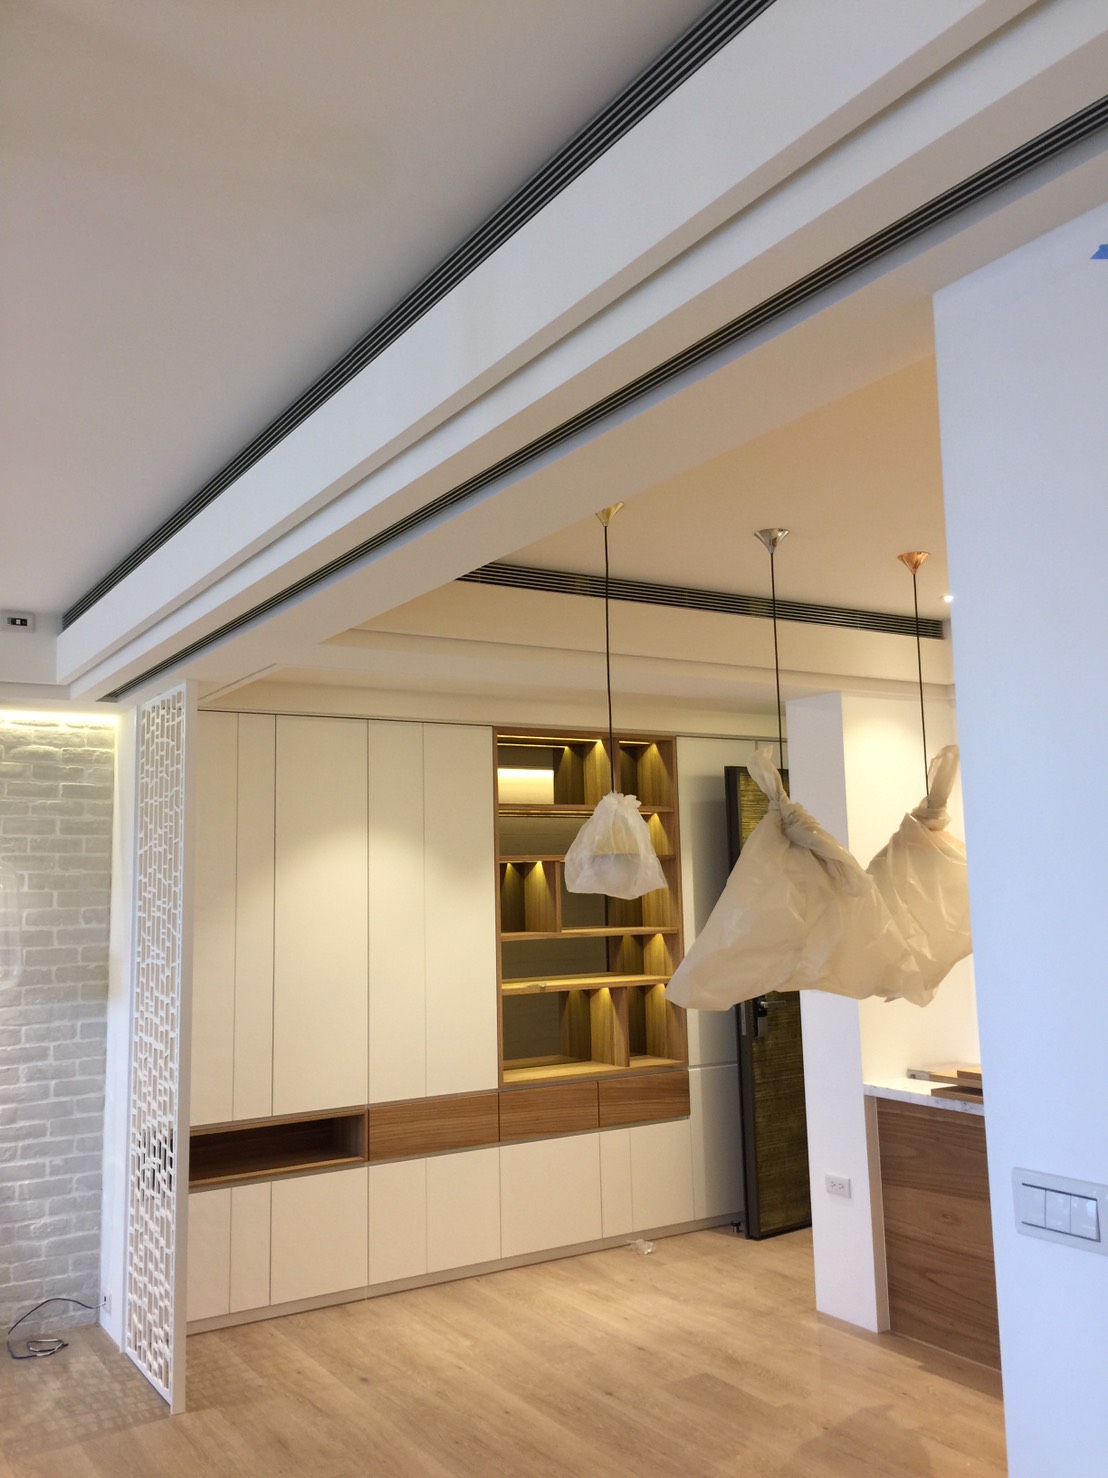 客廳與餐廳隱藏式空調出風口選用鋁無框飾板